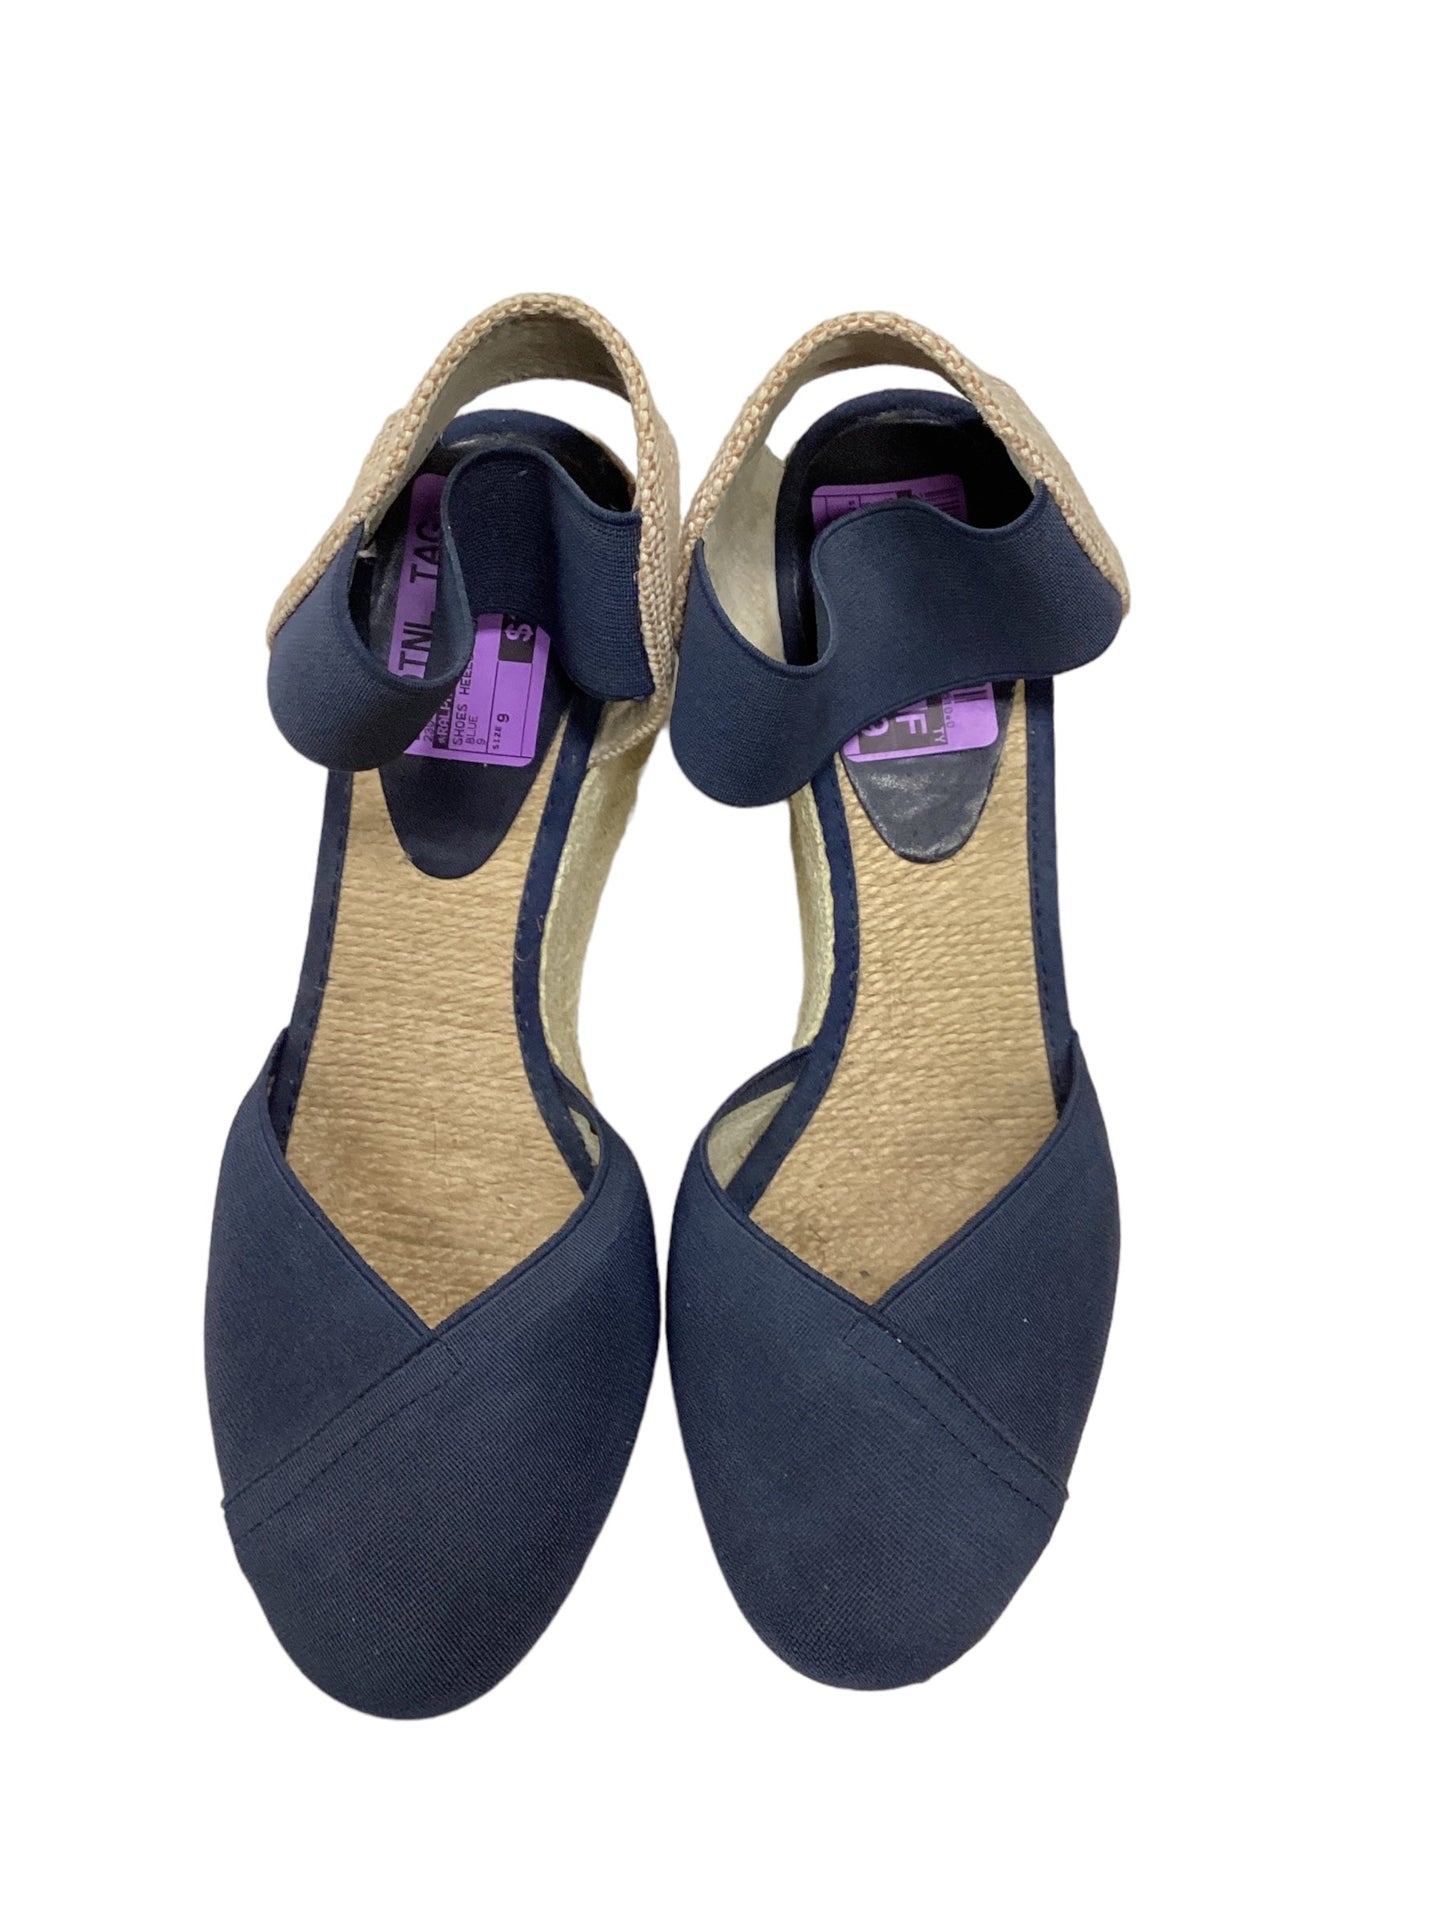 Blue Shoes Heels Wedge Ralph Lauren, Size 9